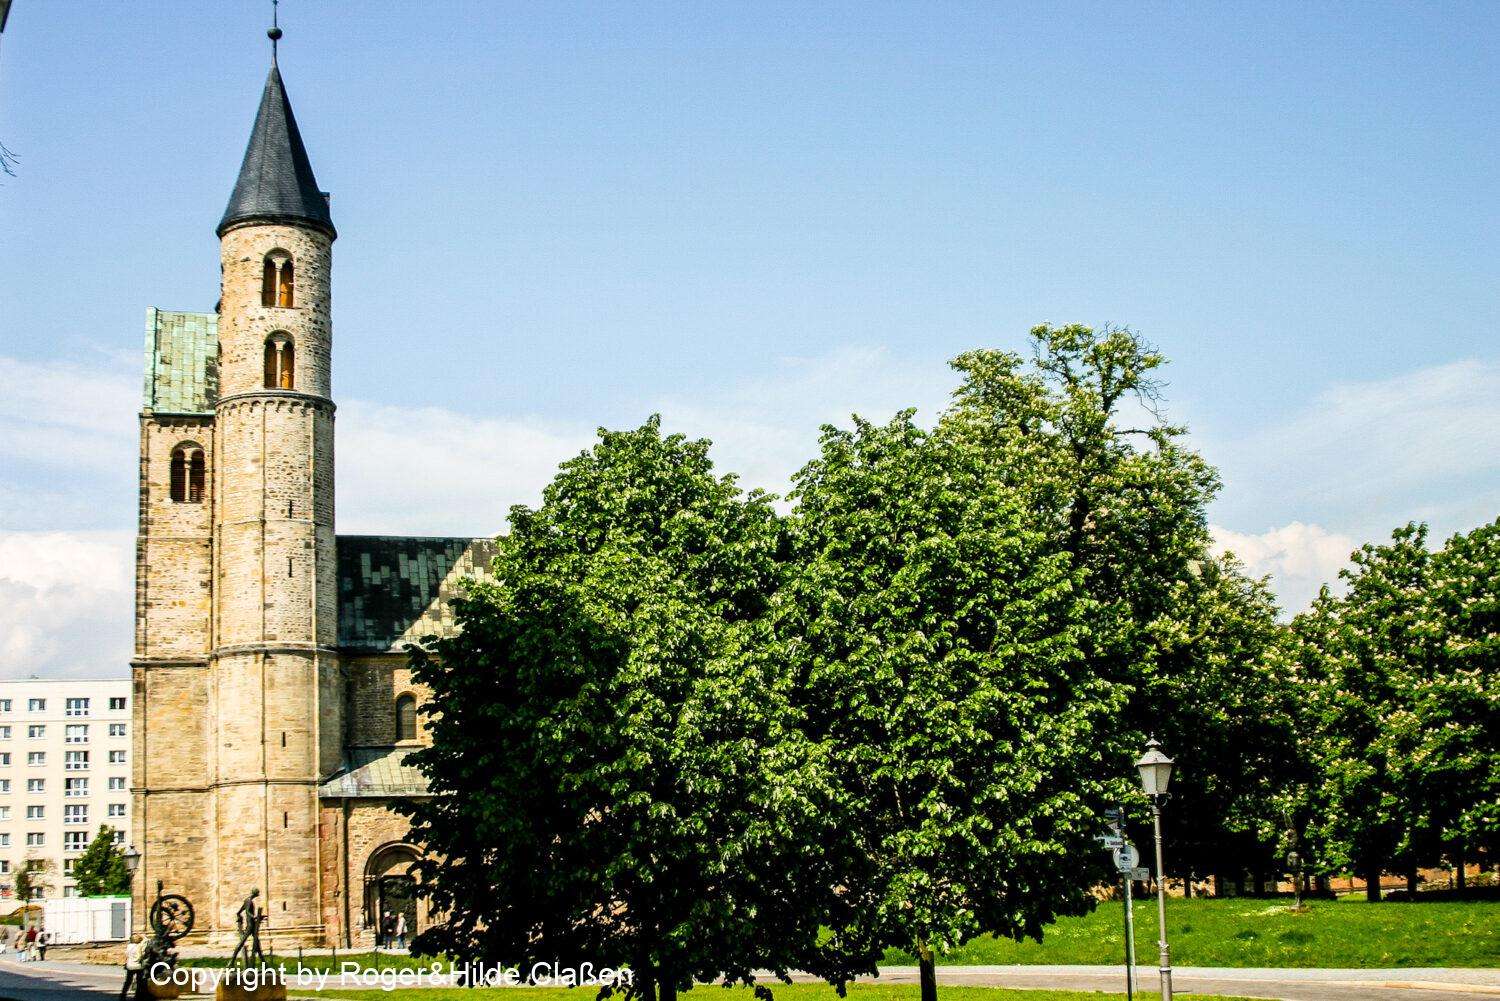 Das Kloster „Unser Lieben Frauen“ in Magdeburg. Es wurde 11. Jahrhundert als Kollegiatstift gegründet. Dieses Gebäude gehört heute zu den bedeutendsten romanischen Bauwerken in Deutschland.